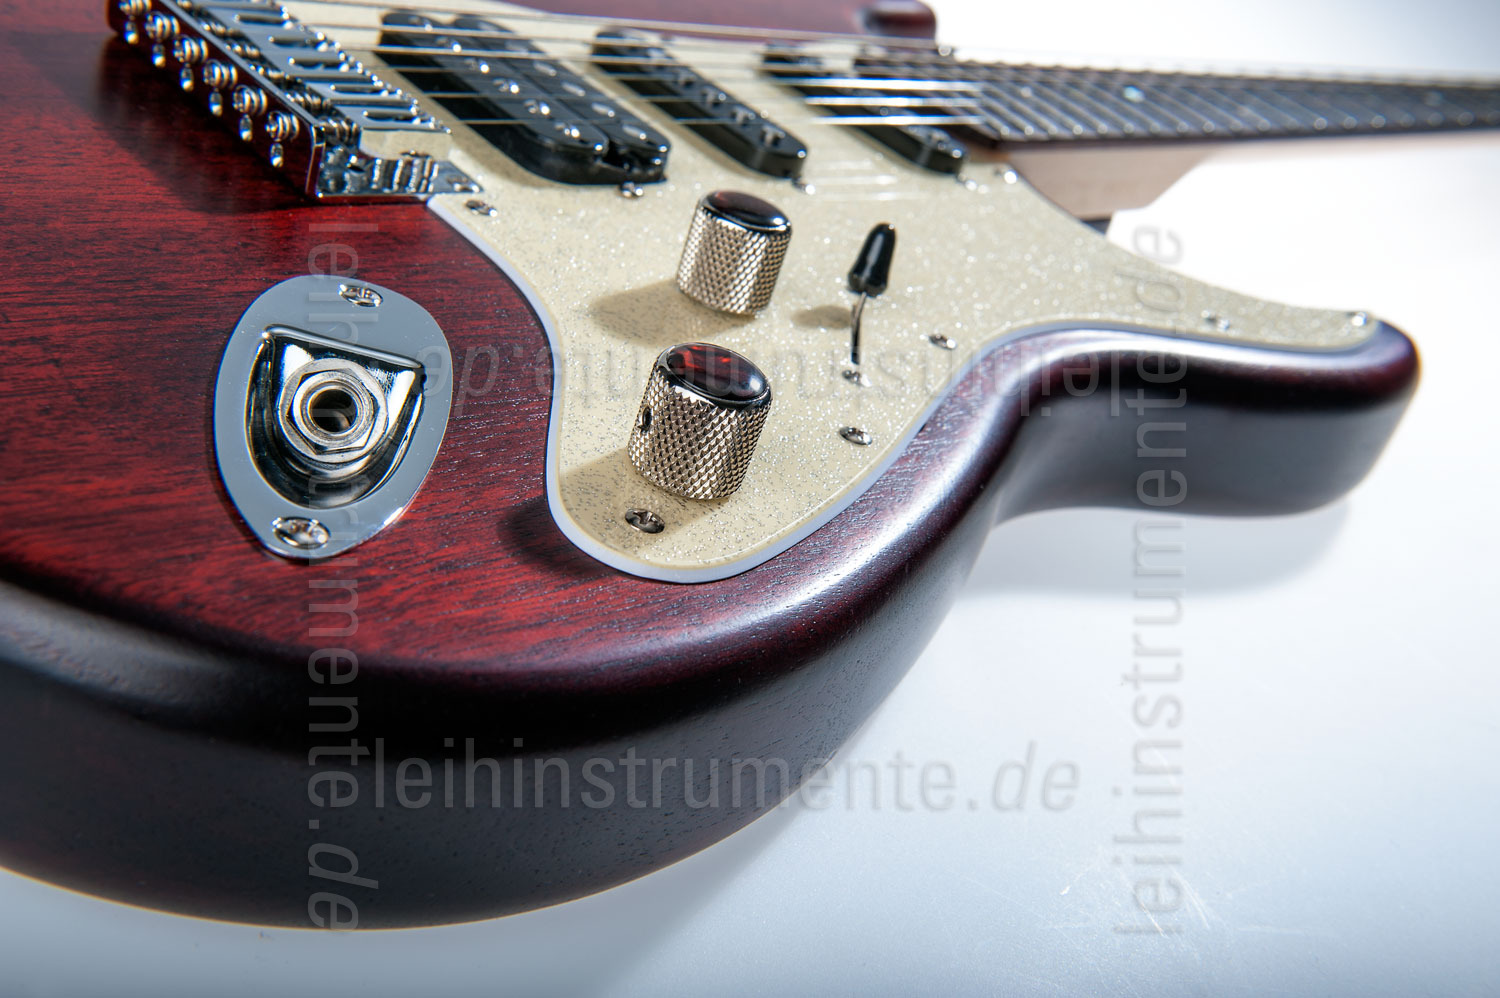 zur Artikelbeschreibung / Preis E-Gitarre BERSTECHER Old Whisky (Edition Goldsmith) + Koffer - made in Germany